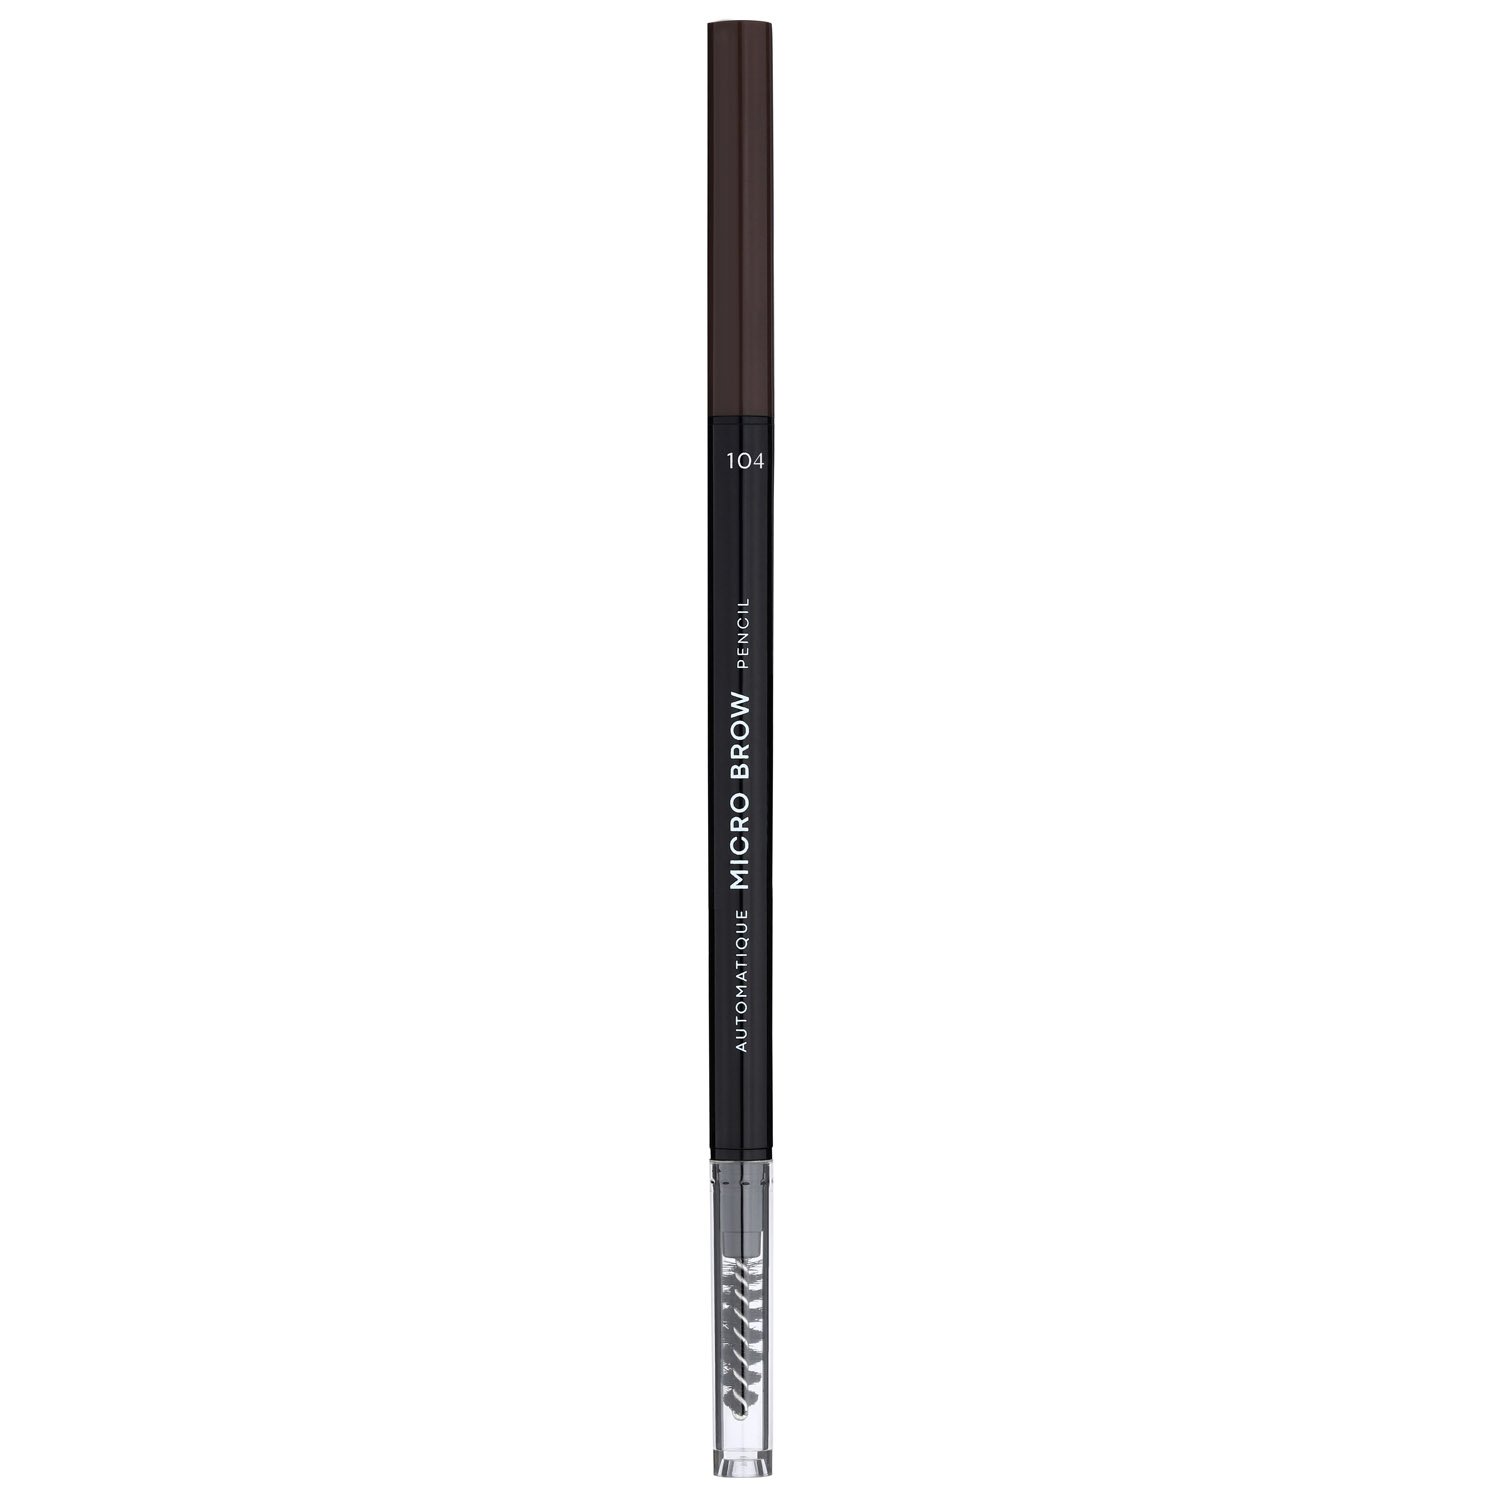 Карандаш для бровей LN Professional Micro Brow Pencil тон 104, 0.12 г - фото 1